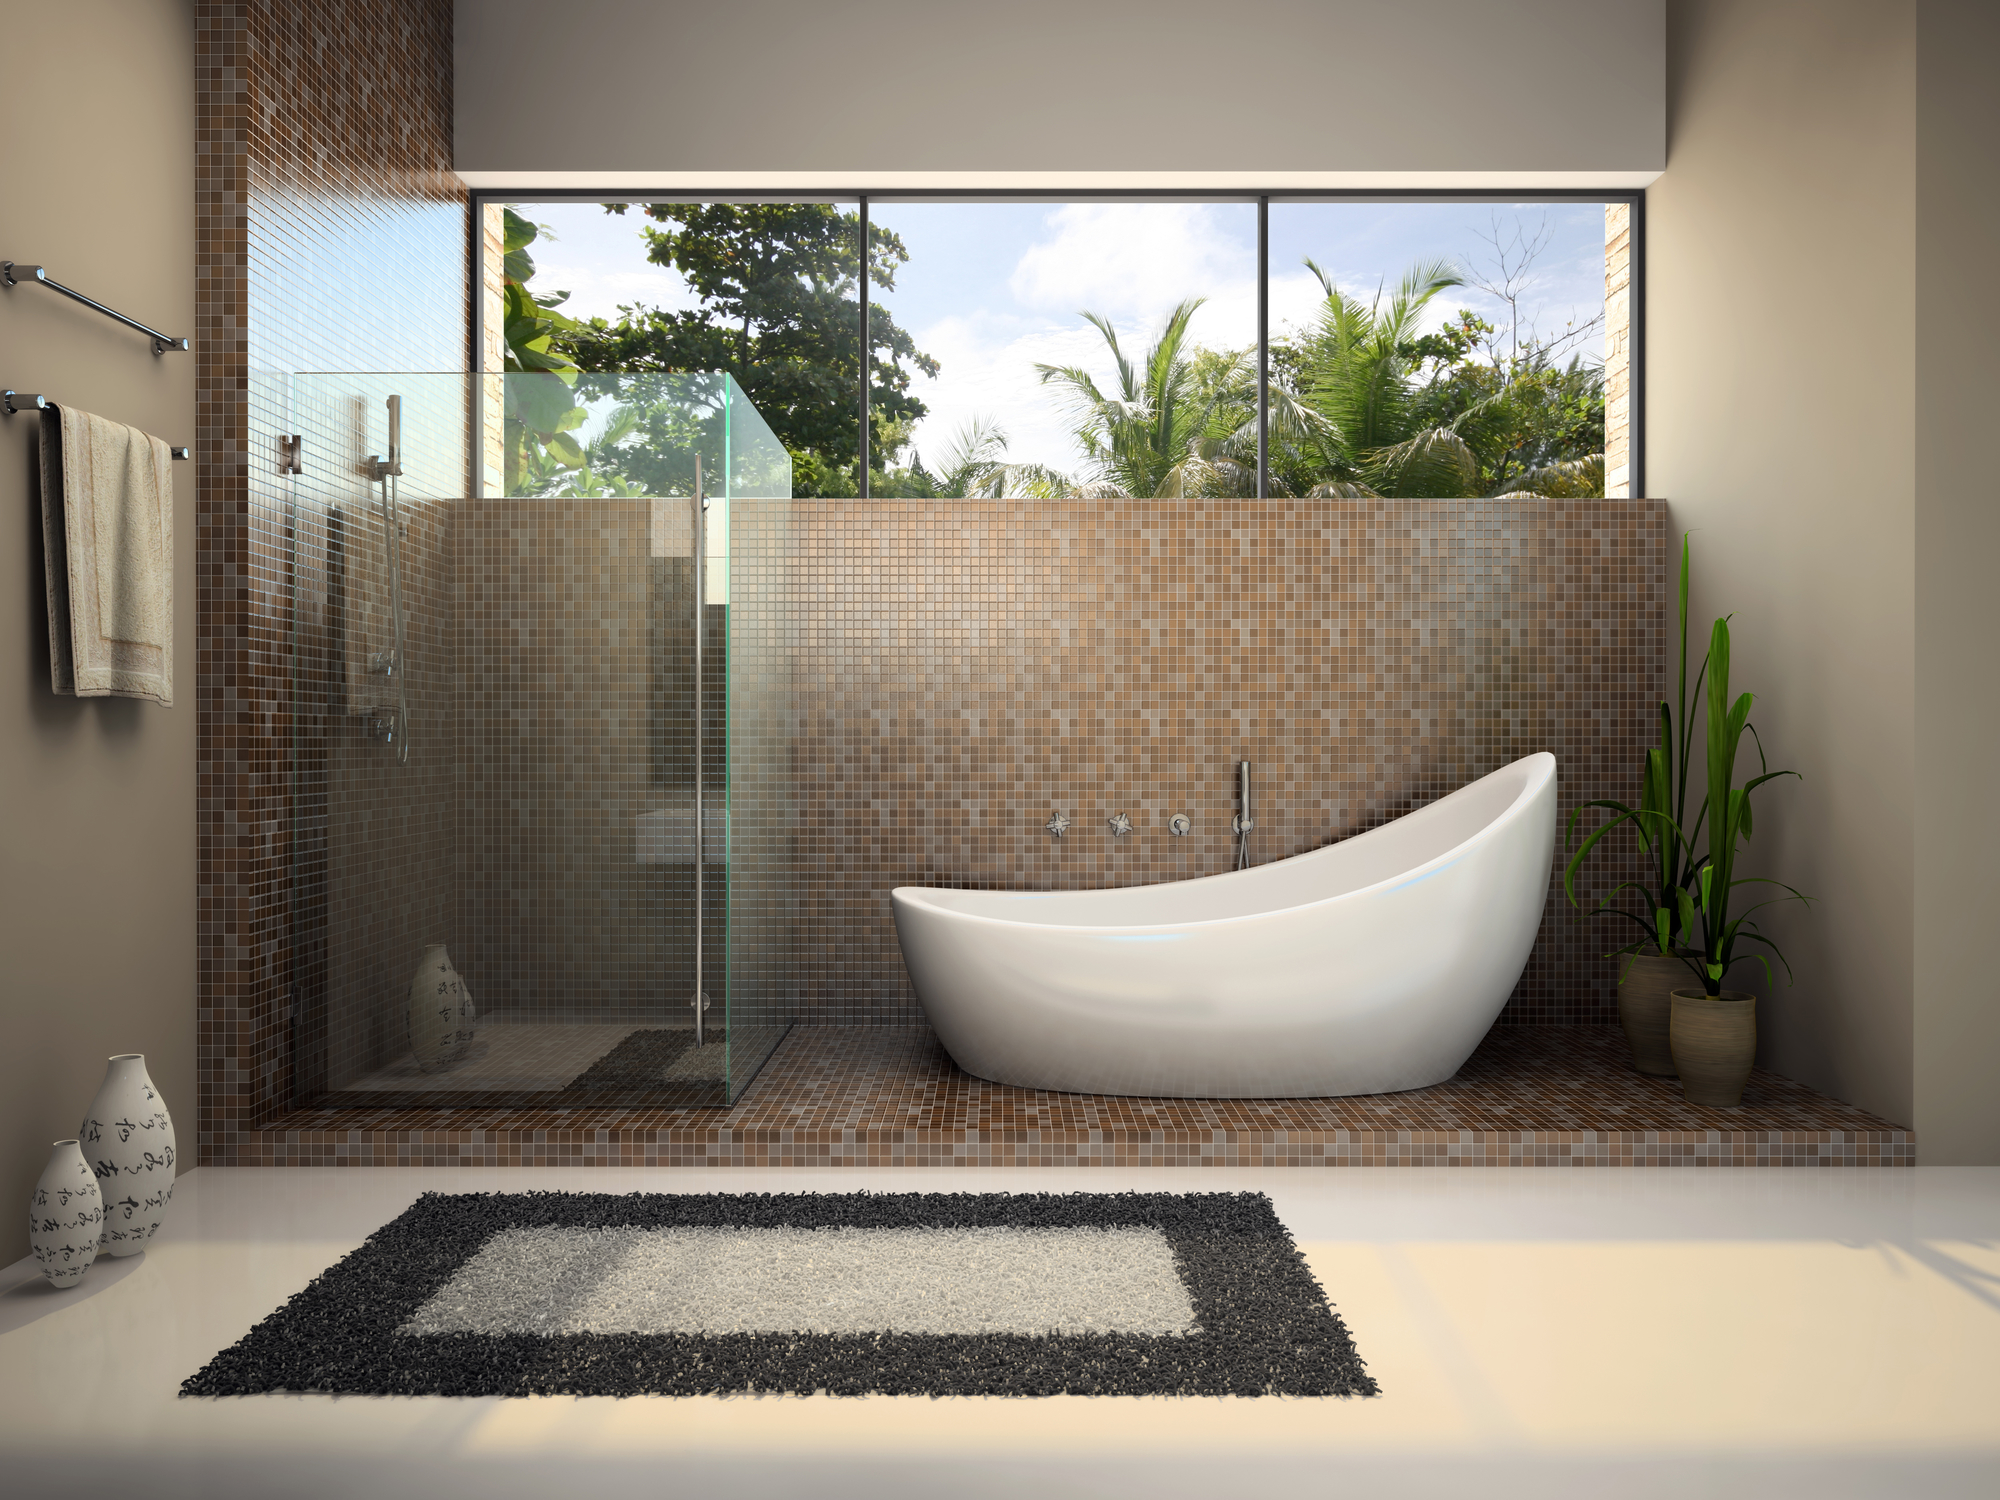 Mozaika w łazience – gdzie sprawdzi się najlepiej?